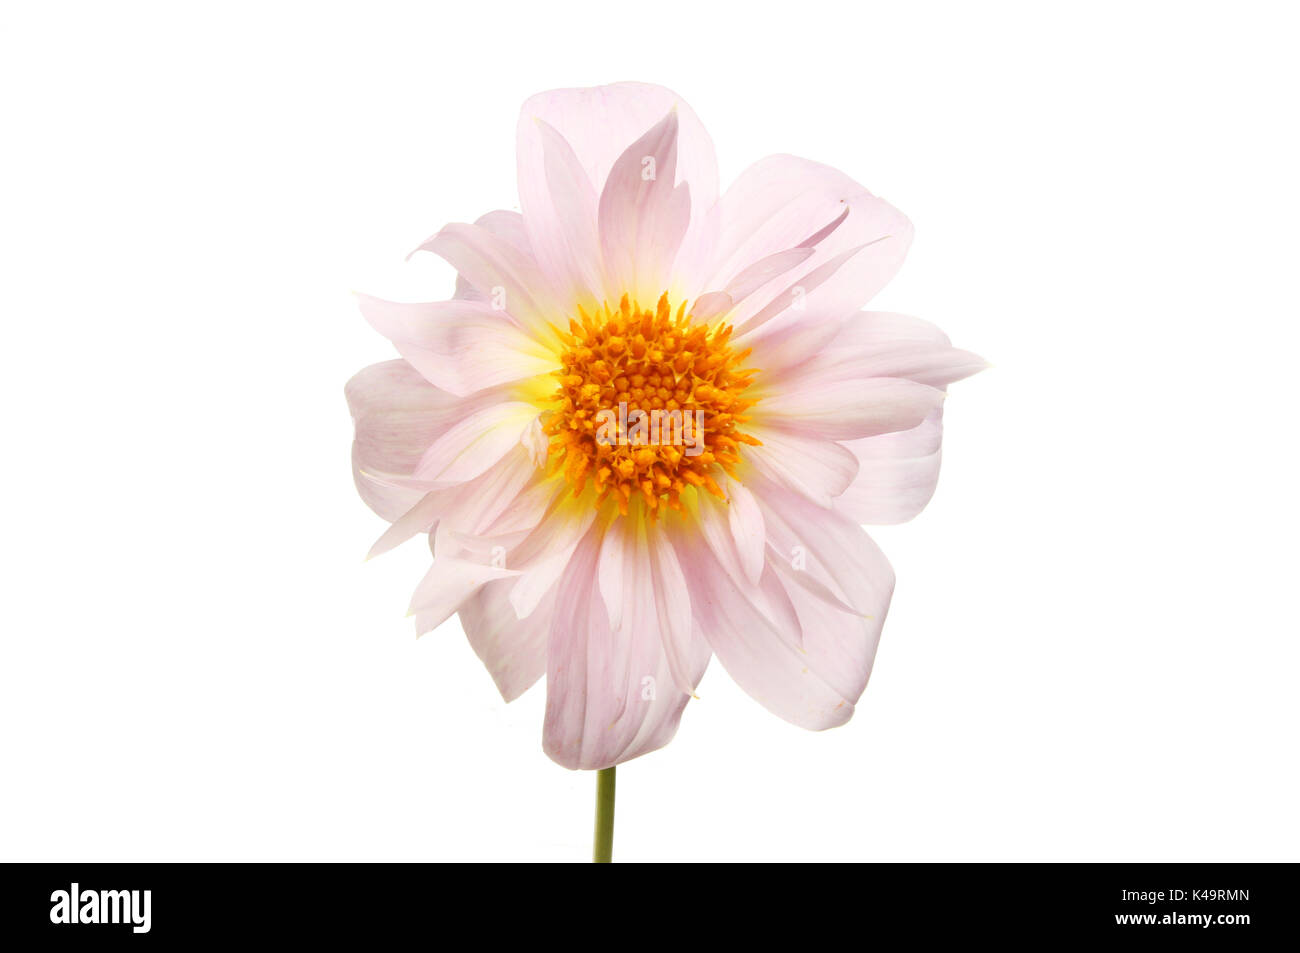 Pastell rosa Dahlie Blüte mit einem gelben Center gegen Weiße isoliert Stockfoto